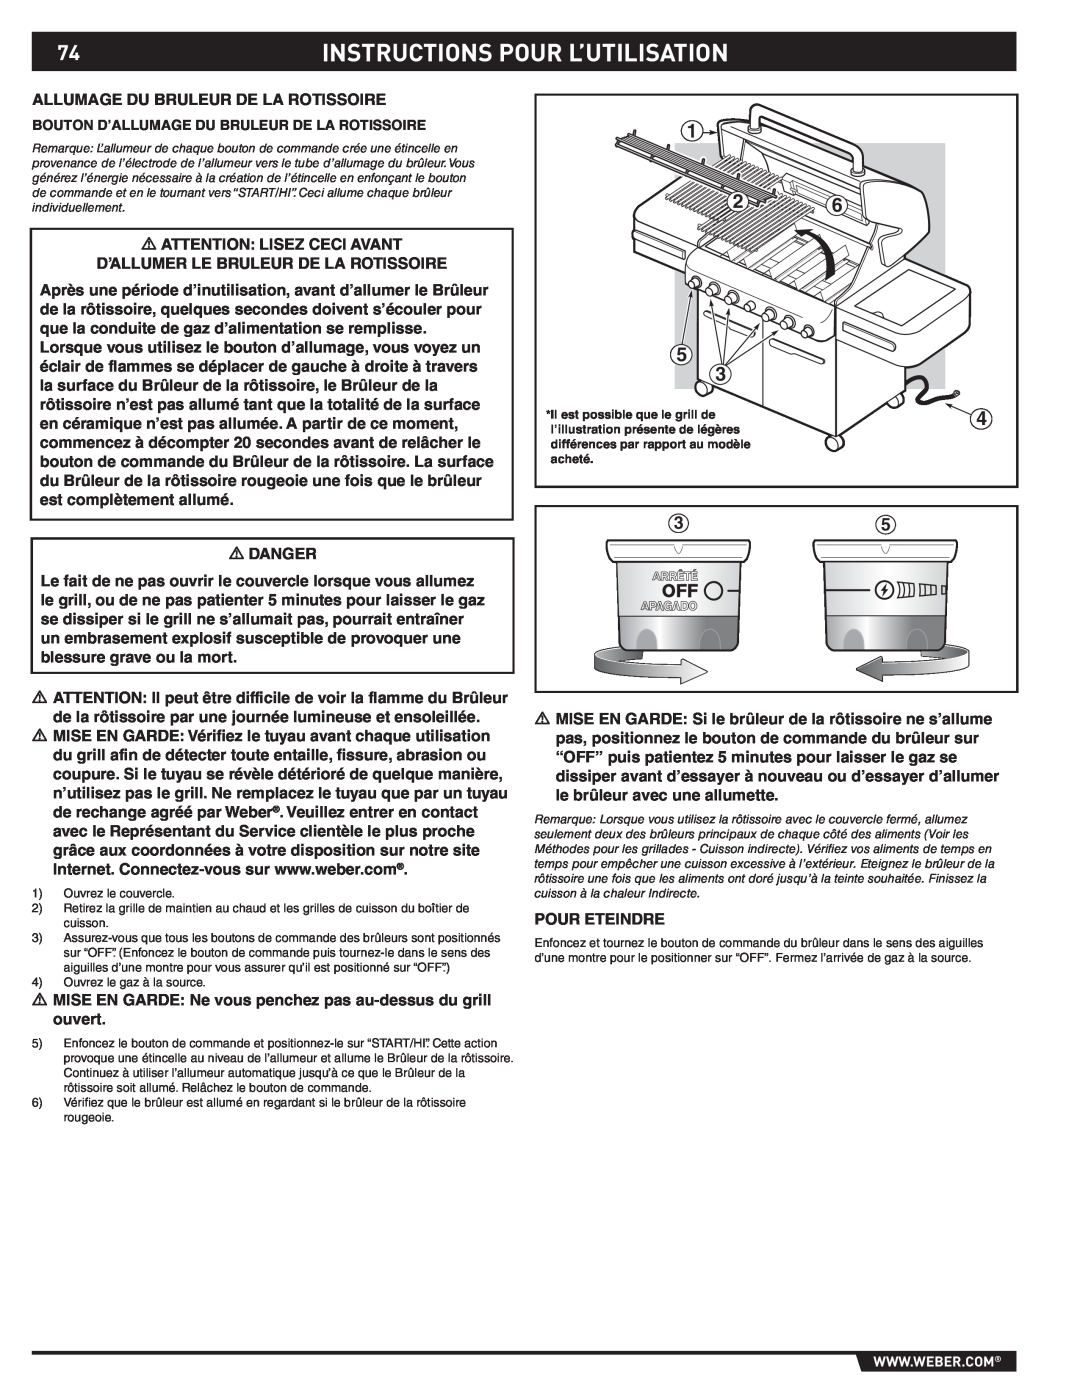 Weber S-470TM manual Instructions Pour L’Utilisation, Bouton D’Allumage Du Bruleur De La Rotissoire, acheté 